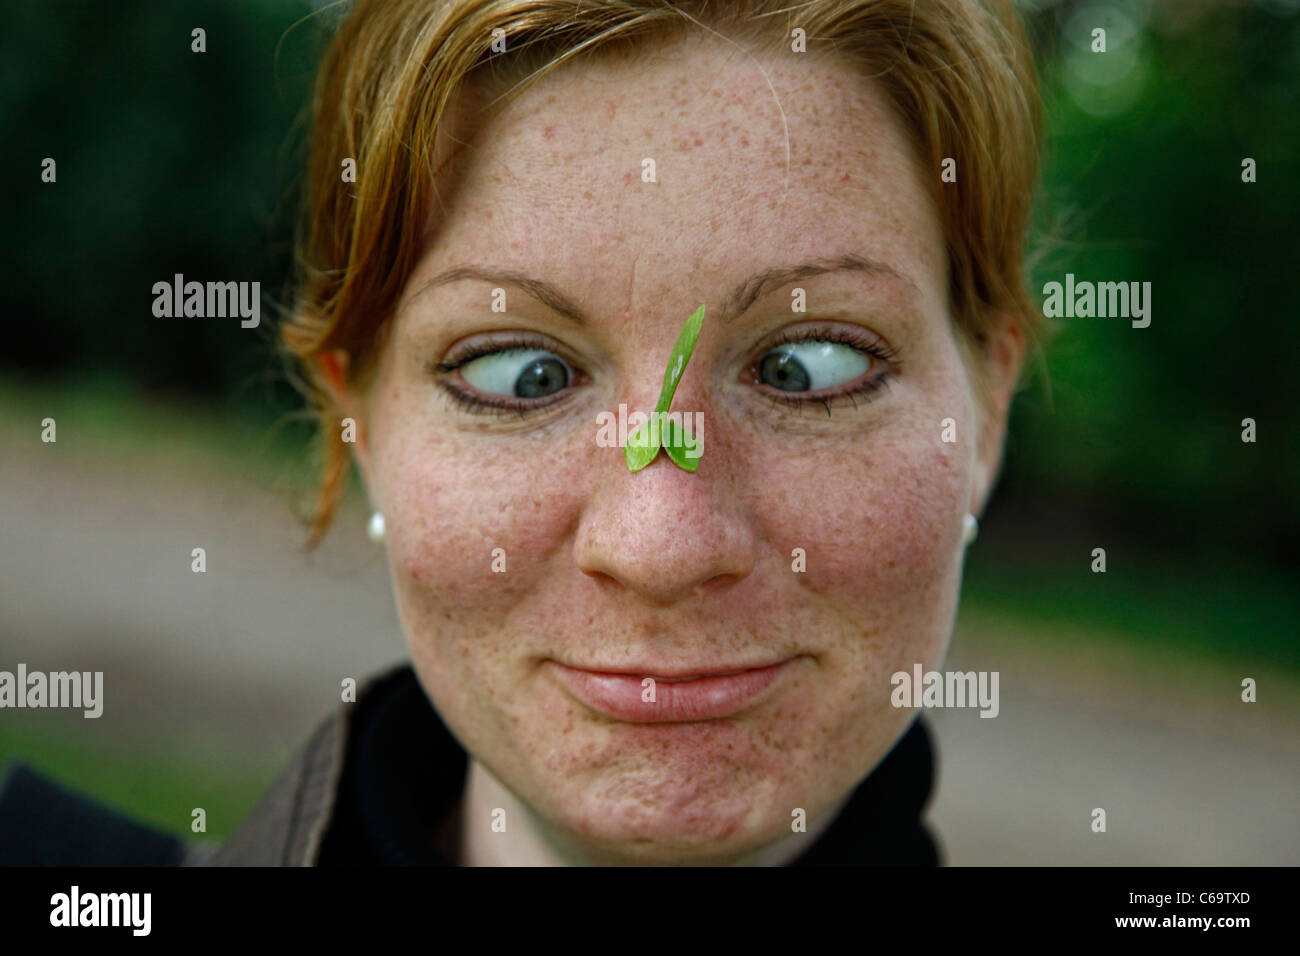 Frau mit einem Blatt auf der Nase ziehen lustig Gesicht, mit Augen gekreuzt Stockfoto